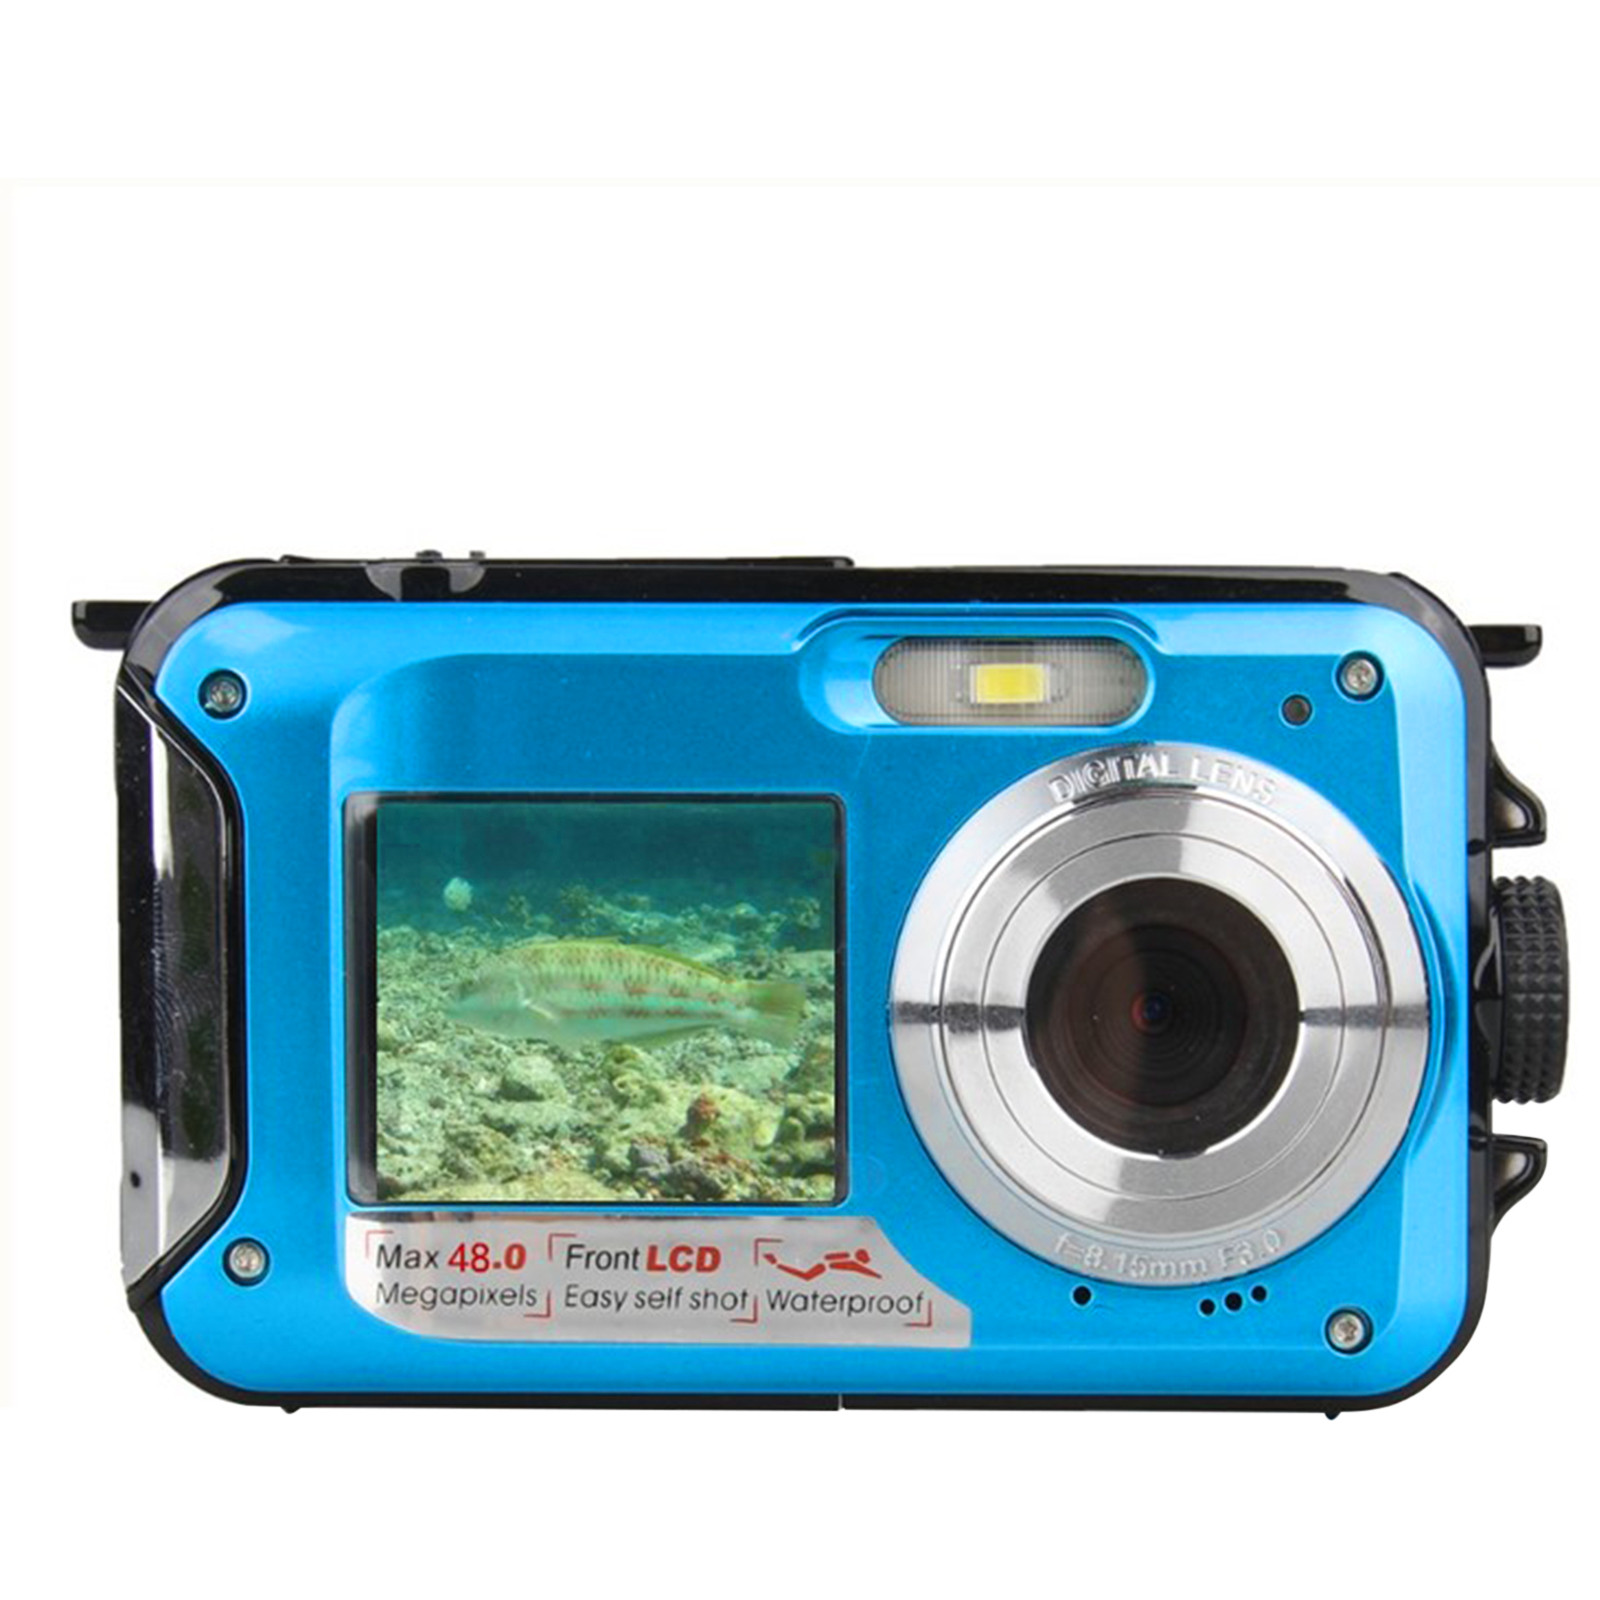 Holiday Savings 2022! Feltree Waterproof Camera Underwater Cameras For Snorkeling Full HD 2.7K 48MP Video Recorder Selfie Dual Screens 10FT 16X Digital Zoom Waterproof Digital Camera Blue - image 1 of 7